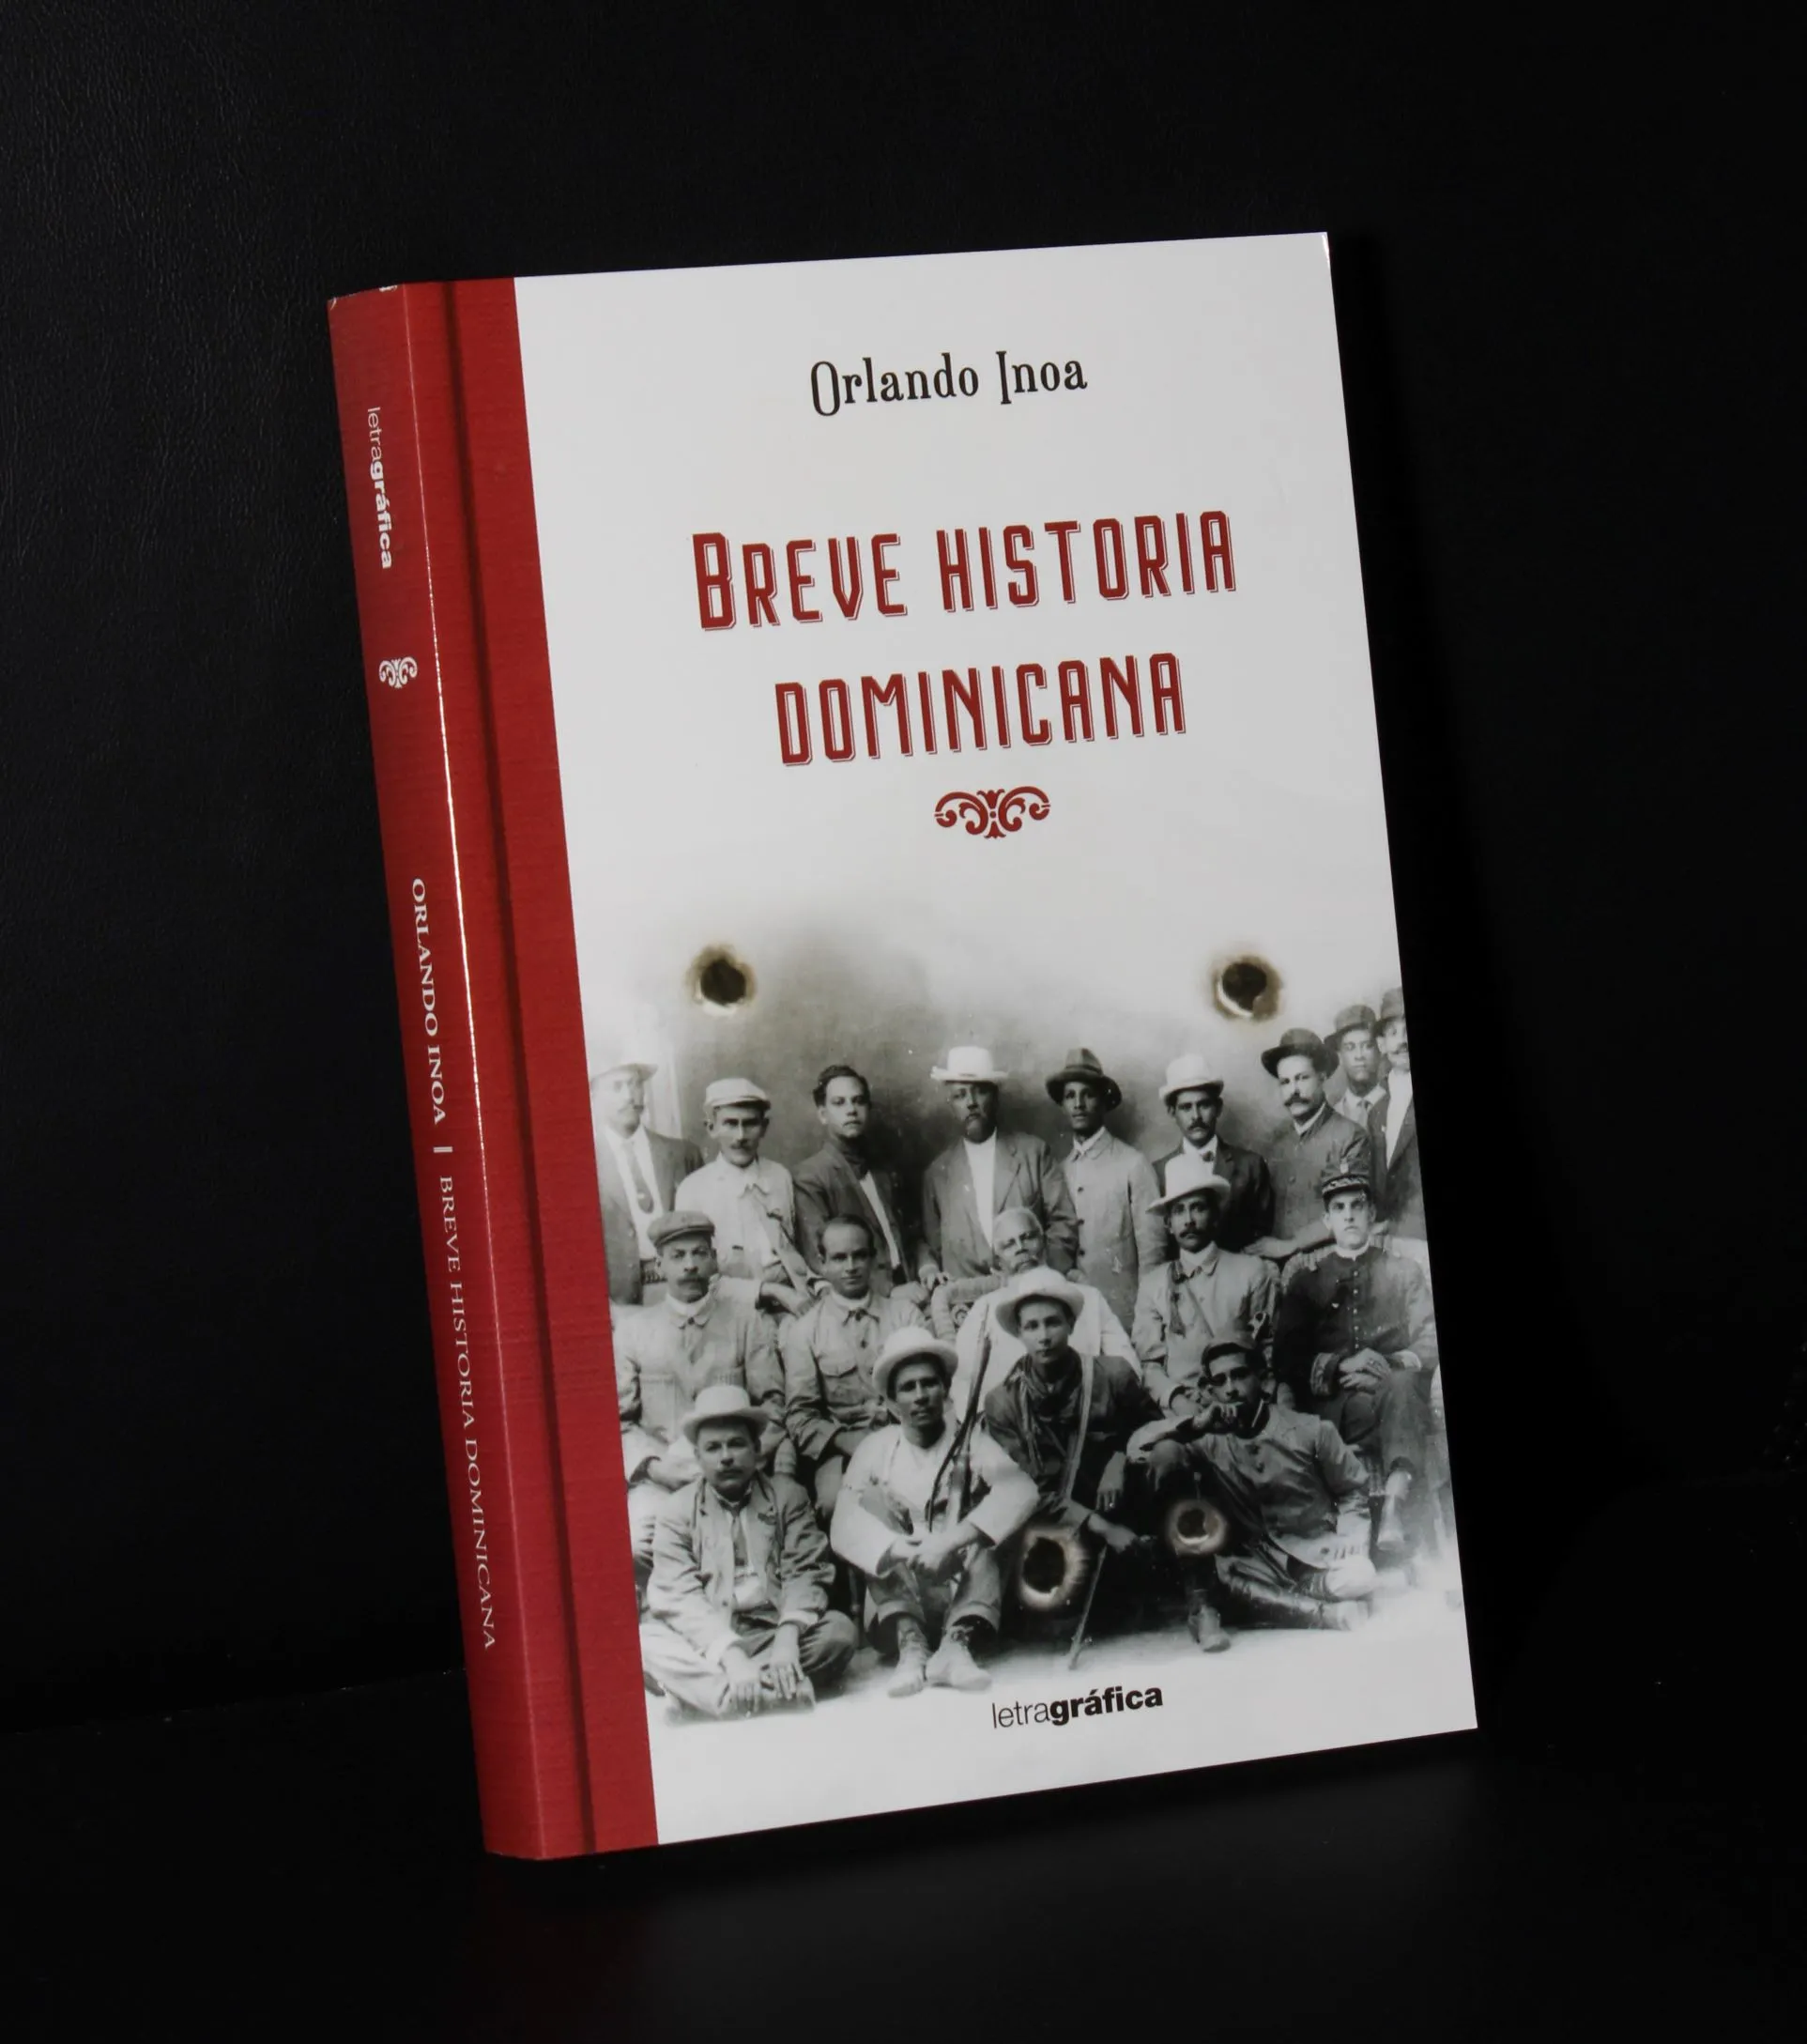 Circula el libro ‘Breve historia dominicana’, de Orlando Inoa